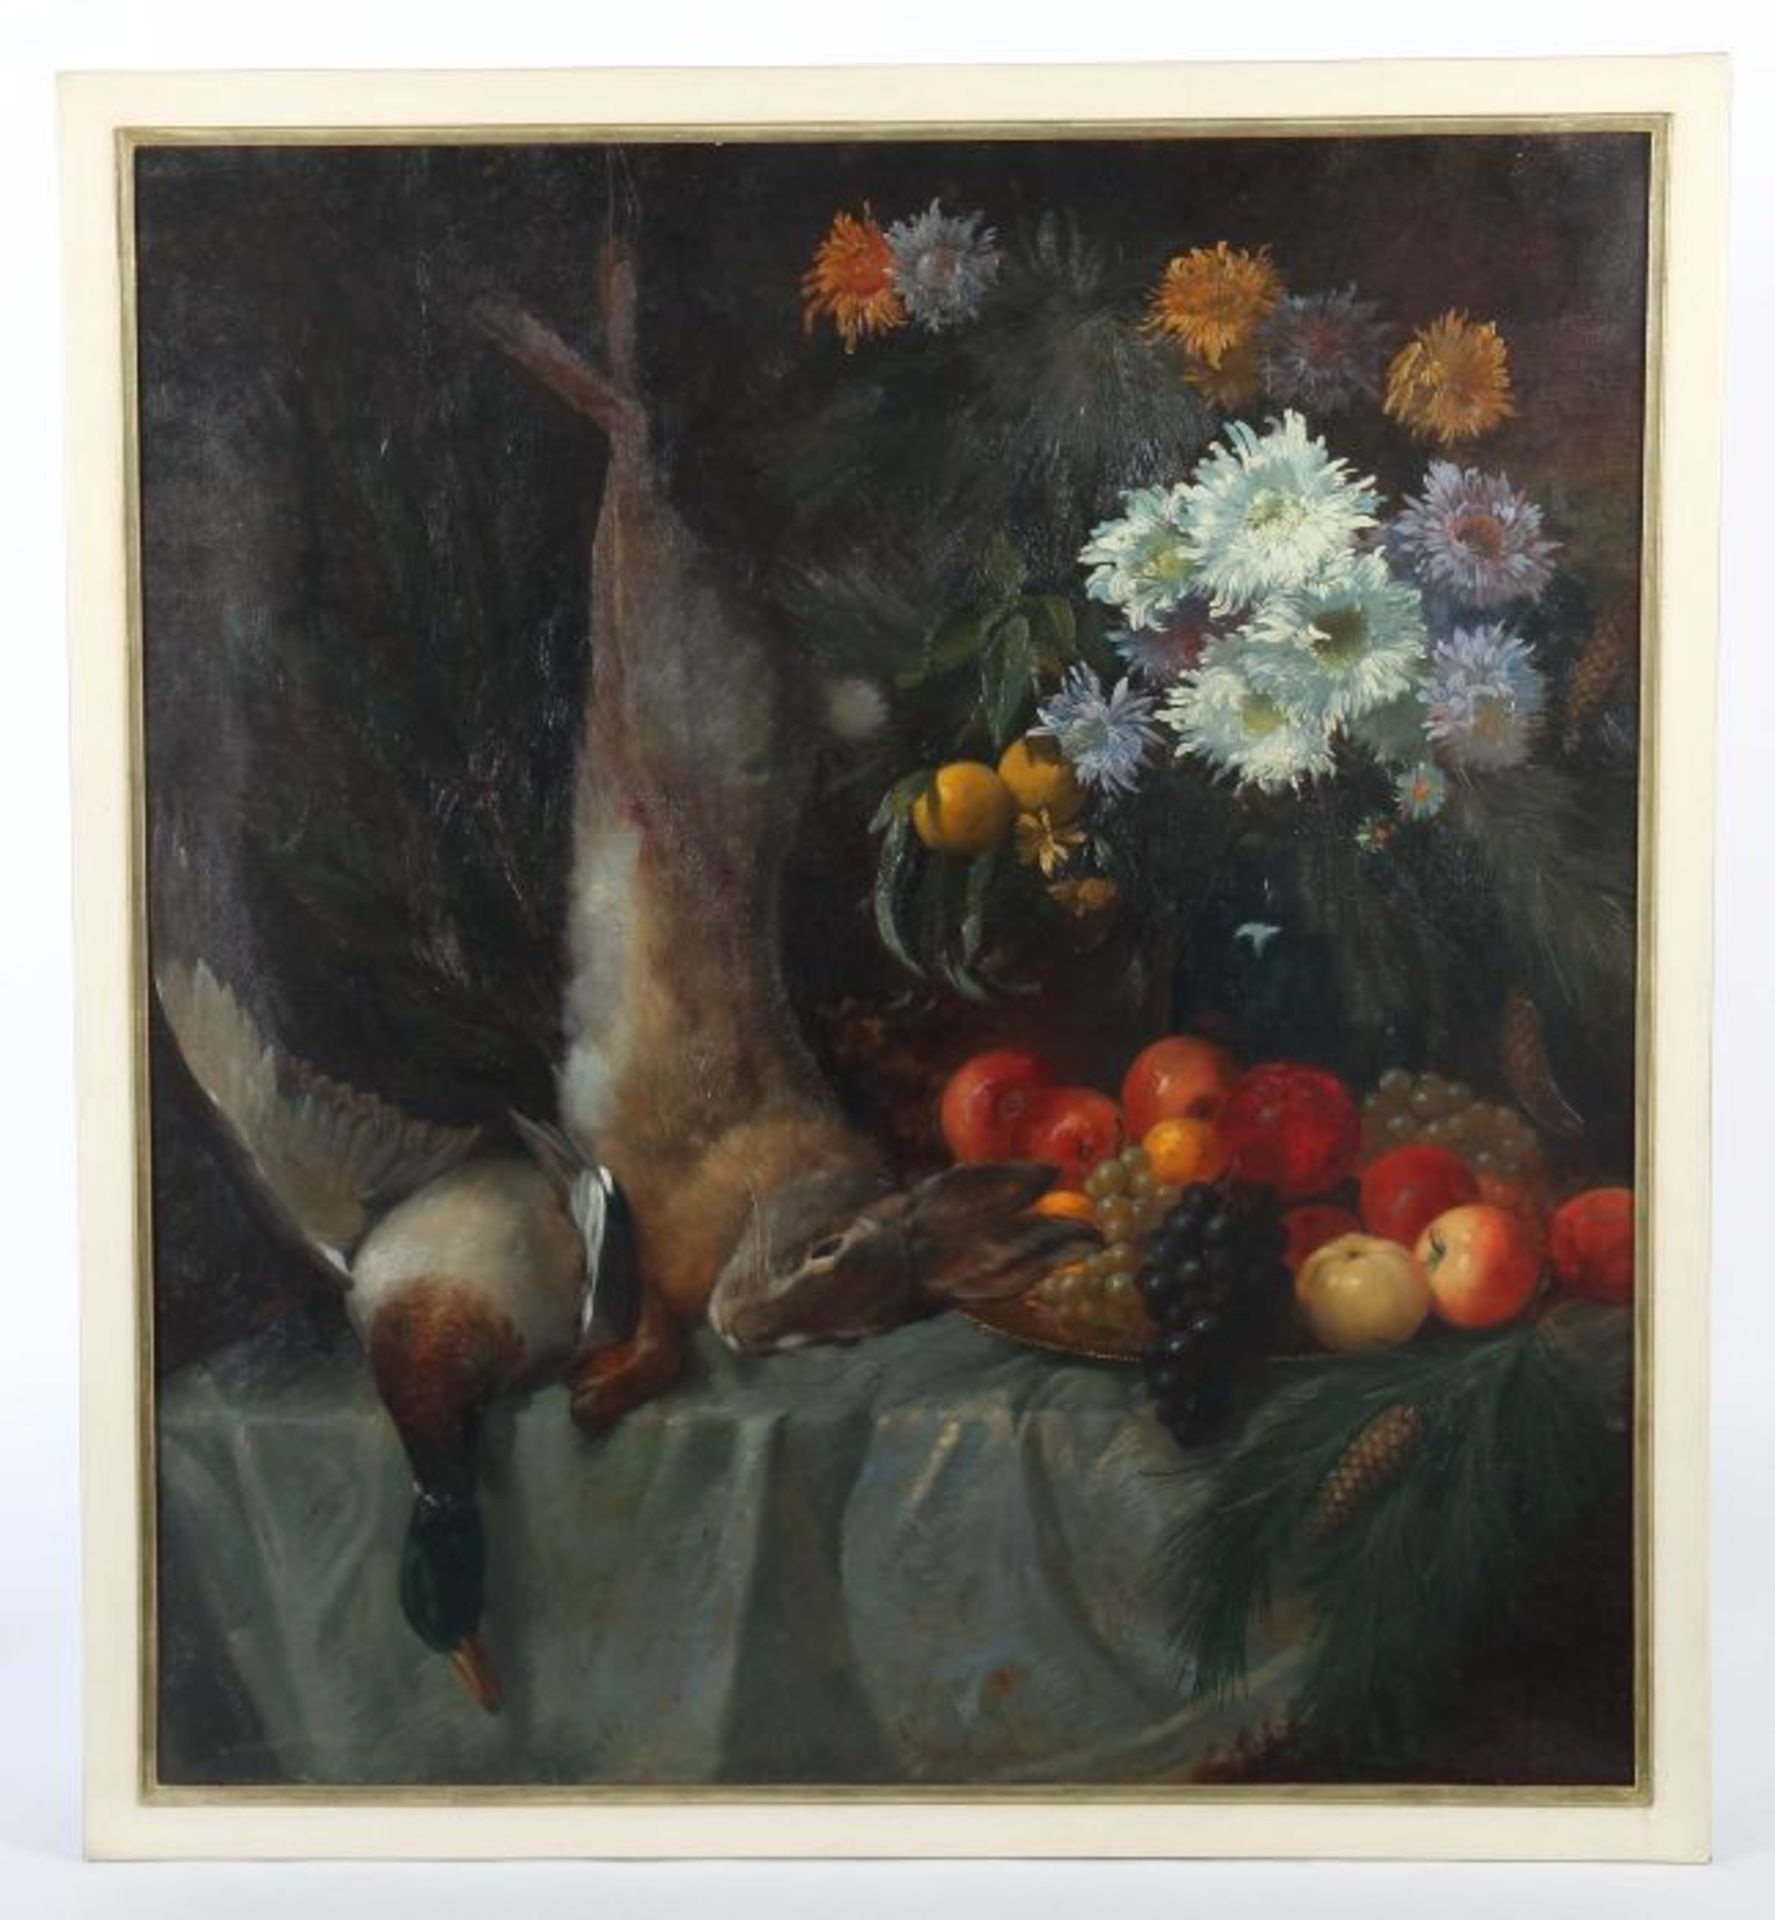 Schulze, Hans Rudolf1870 - 1951, deutscher Maler. "Jagdstillleben", erlegter Hase und Ente, neben - Bild 2 aus 4